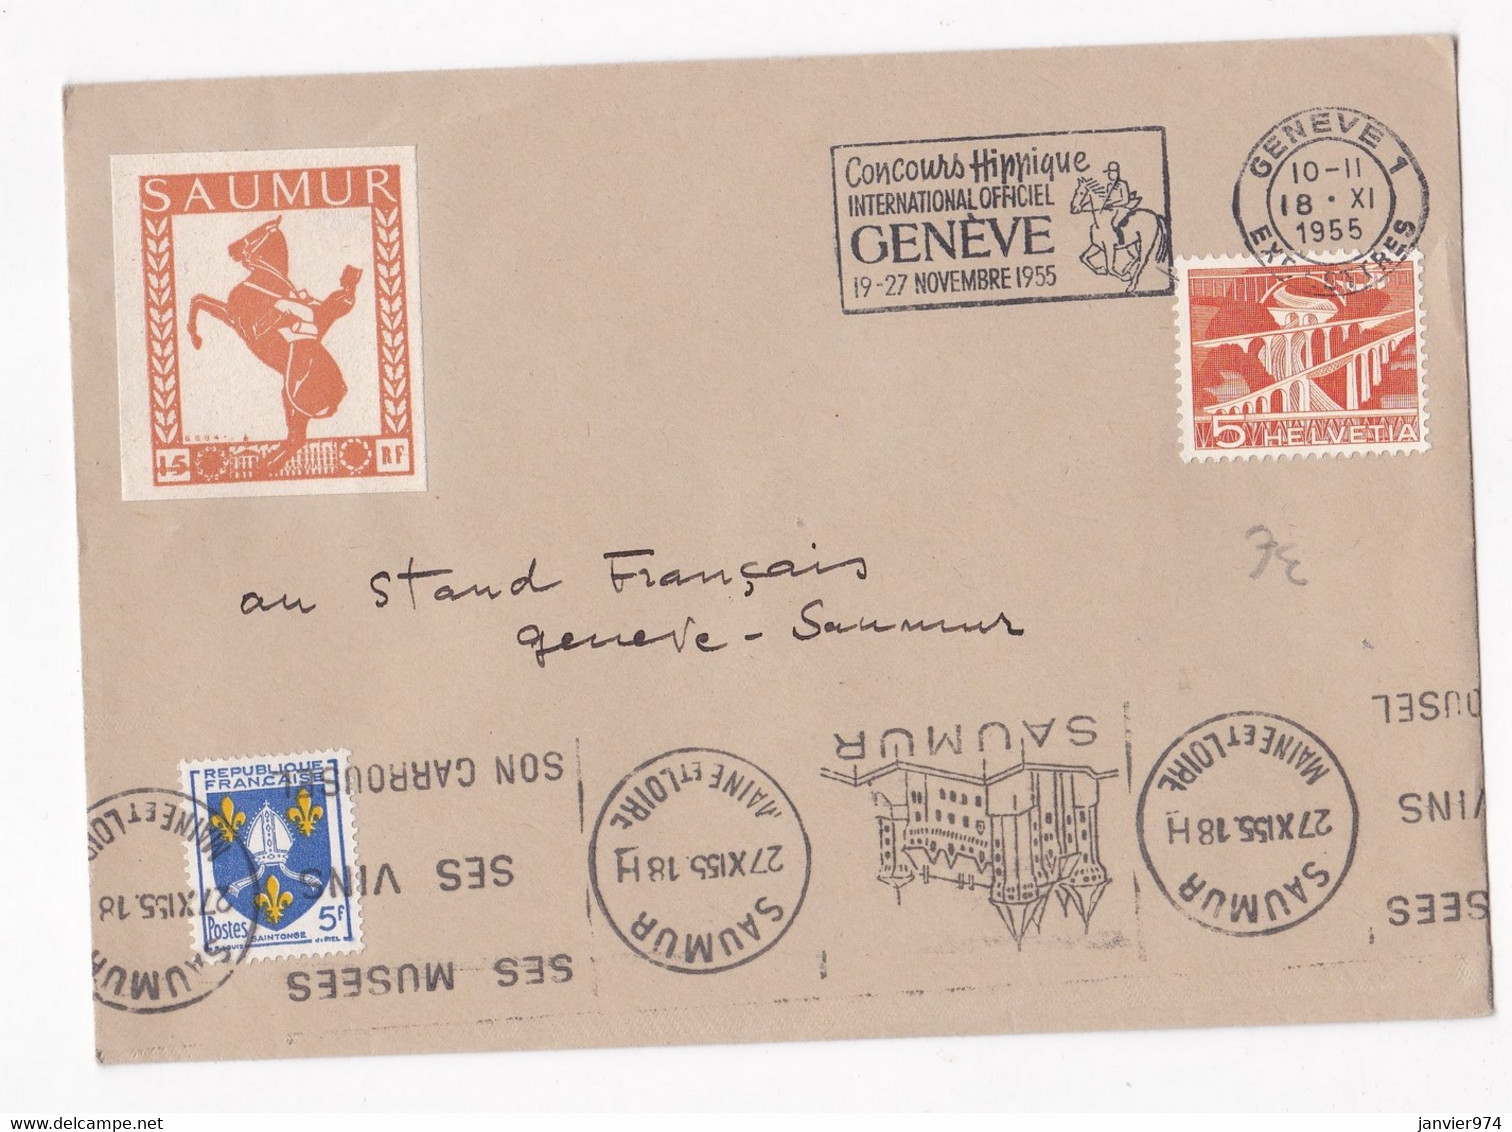 Enveloppe Affranchissement France Suisse 1955 Concours Hippique De Genève. Vignette Saumur. - Ippica